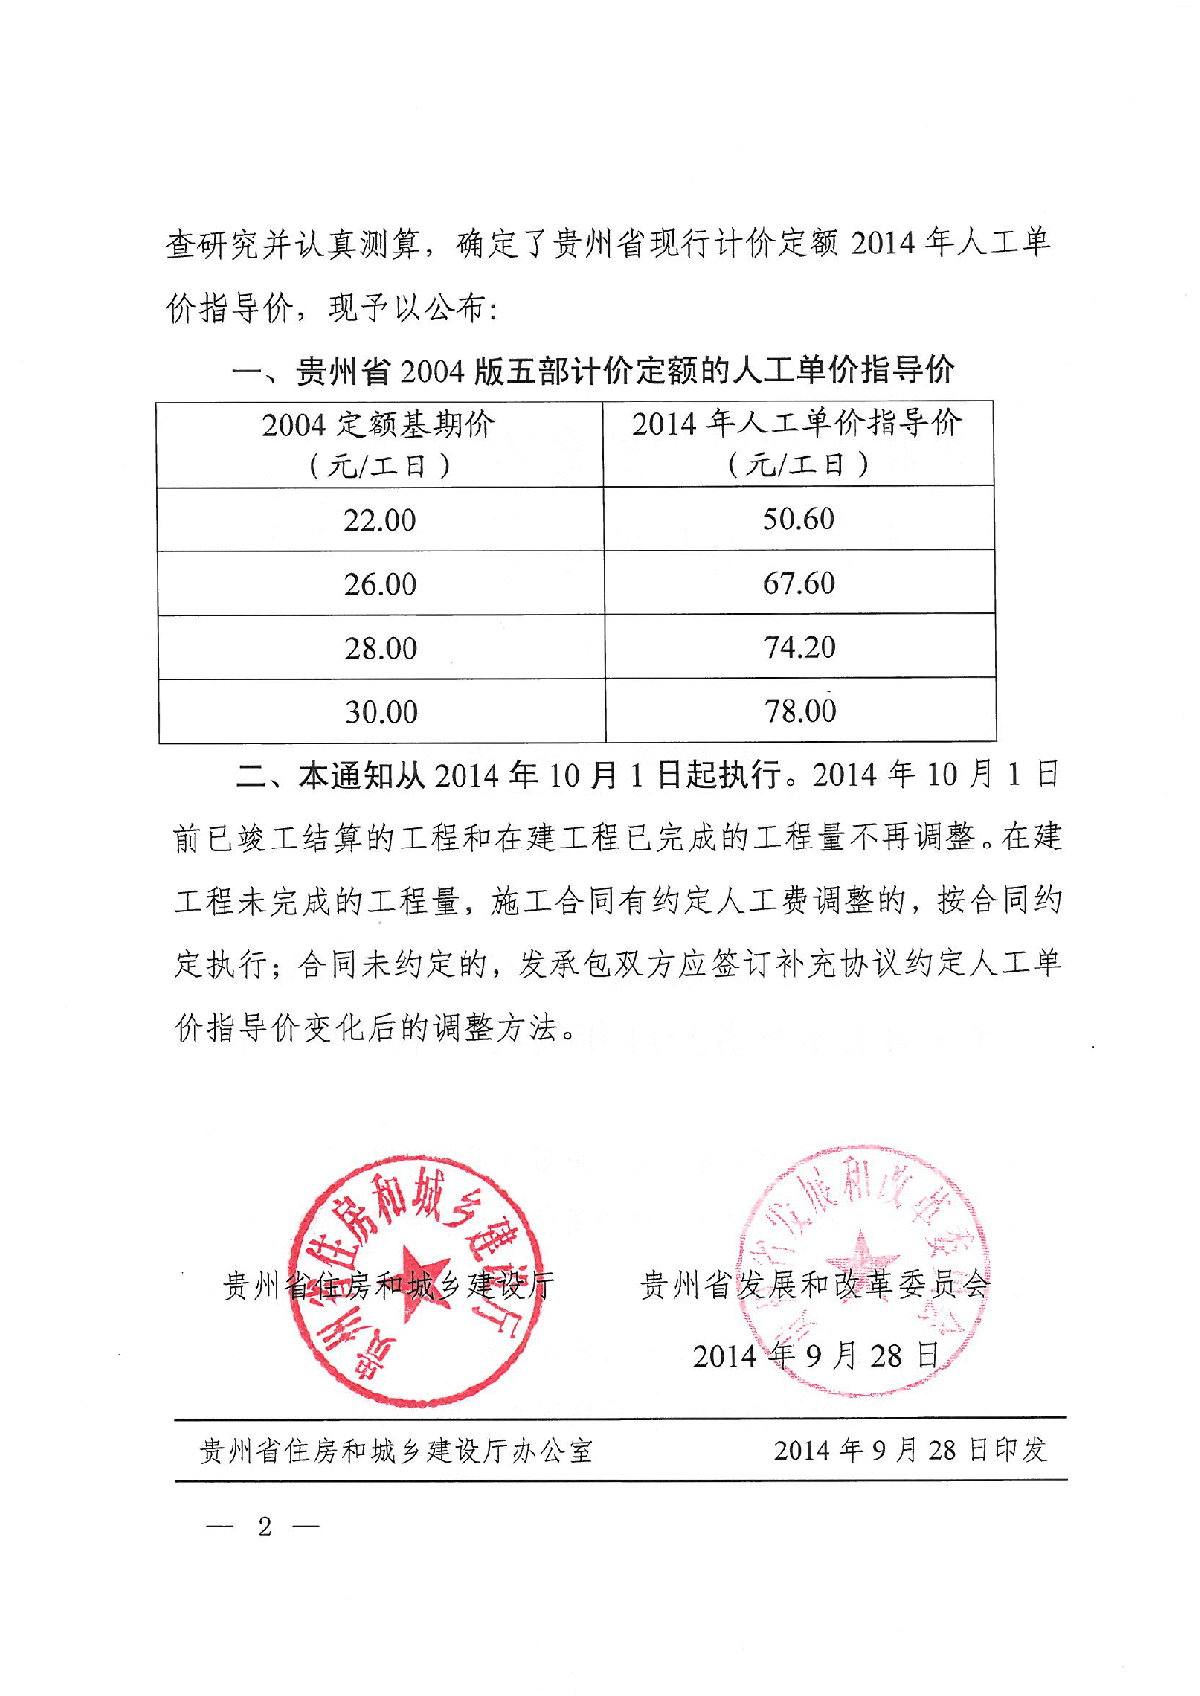 【贵州】人工费调整的指导价文件 (黔建建通463号文)-图二